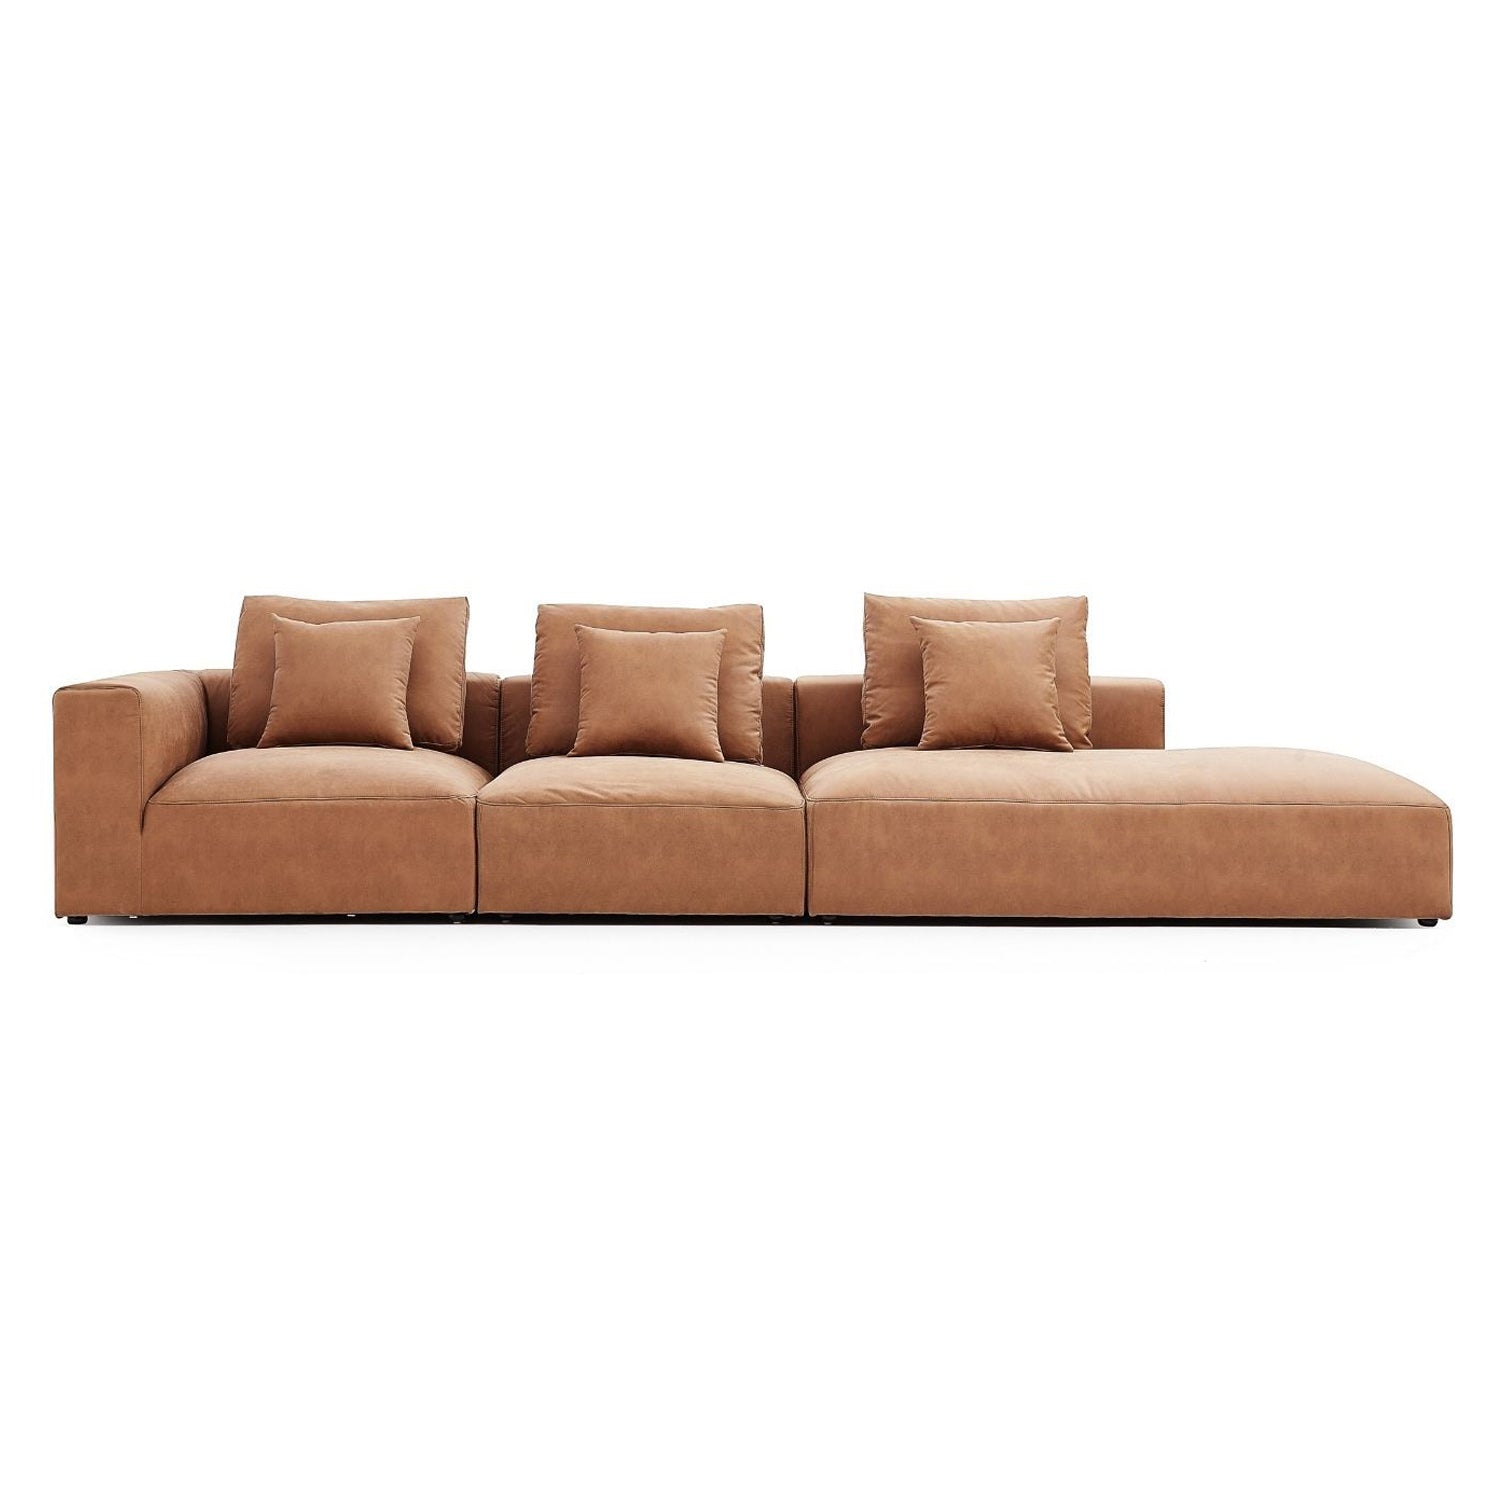 The 5th Sofa